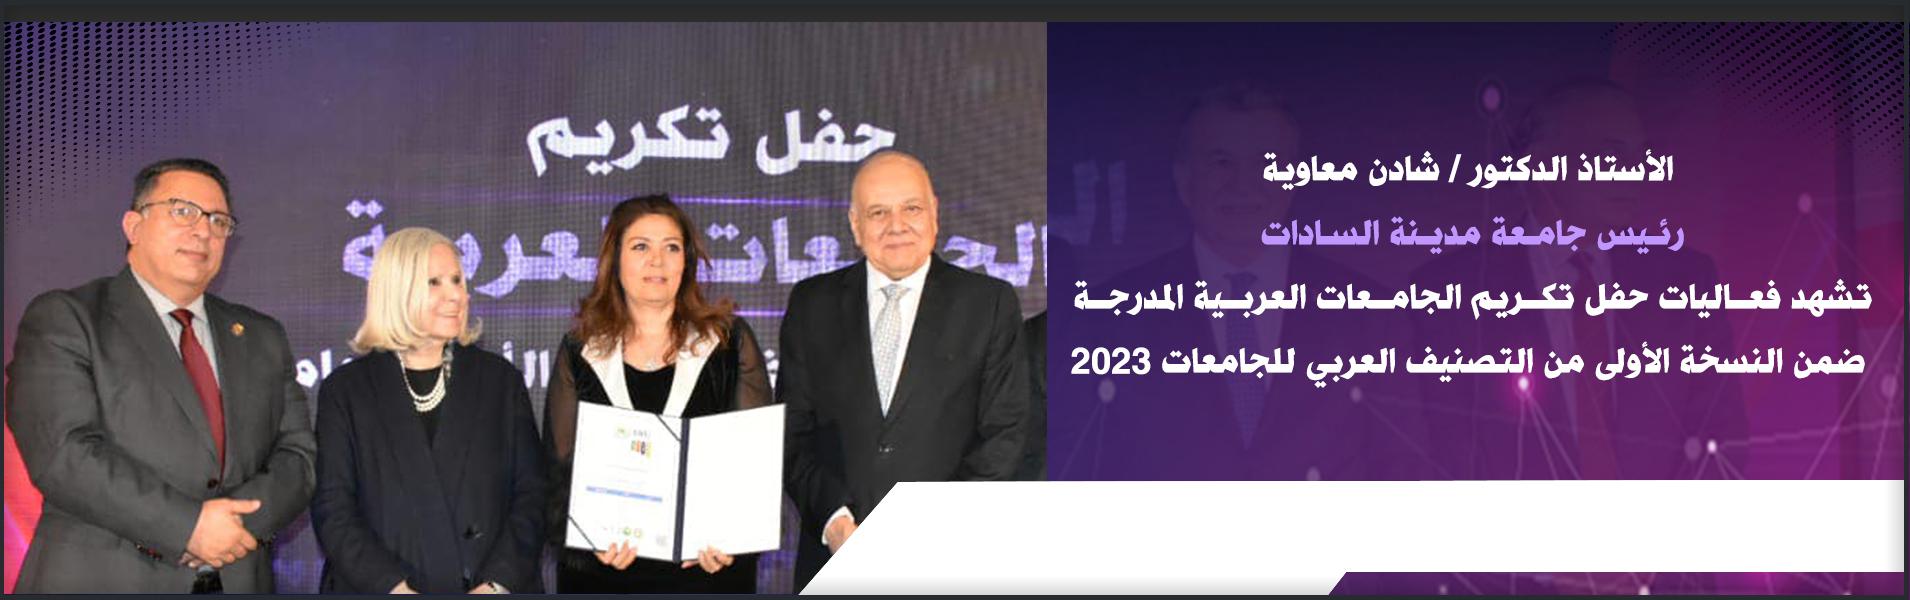 رئيس جامعة مدينة السادات تشهد فعاليات حفل تكريم الجامعات العربية المدرجة ضمن النسخة الأولى من التصنيف العربي للجامعات 2023